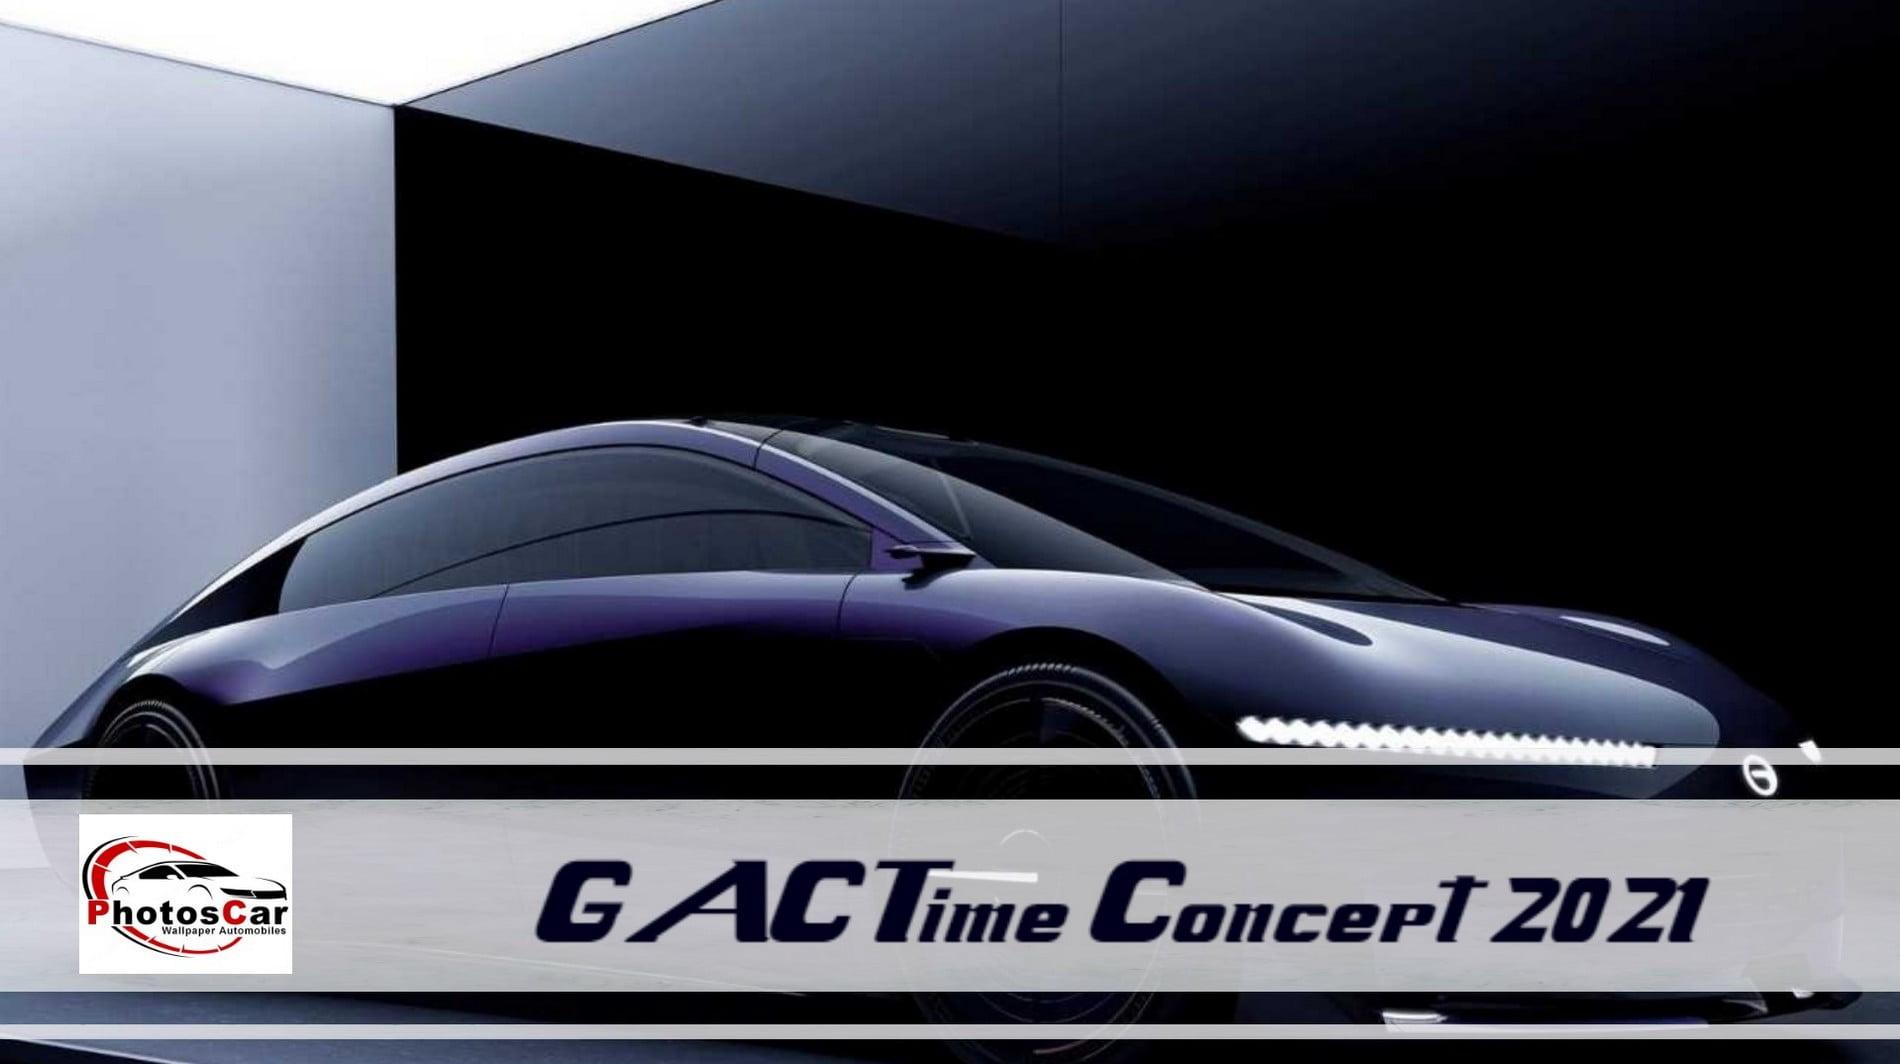 GAC Time Concept 2021